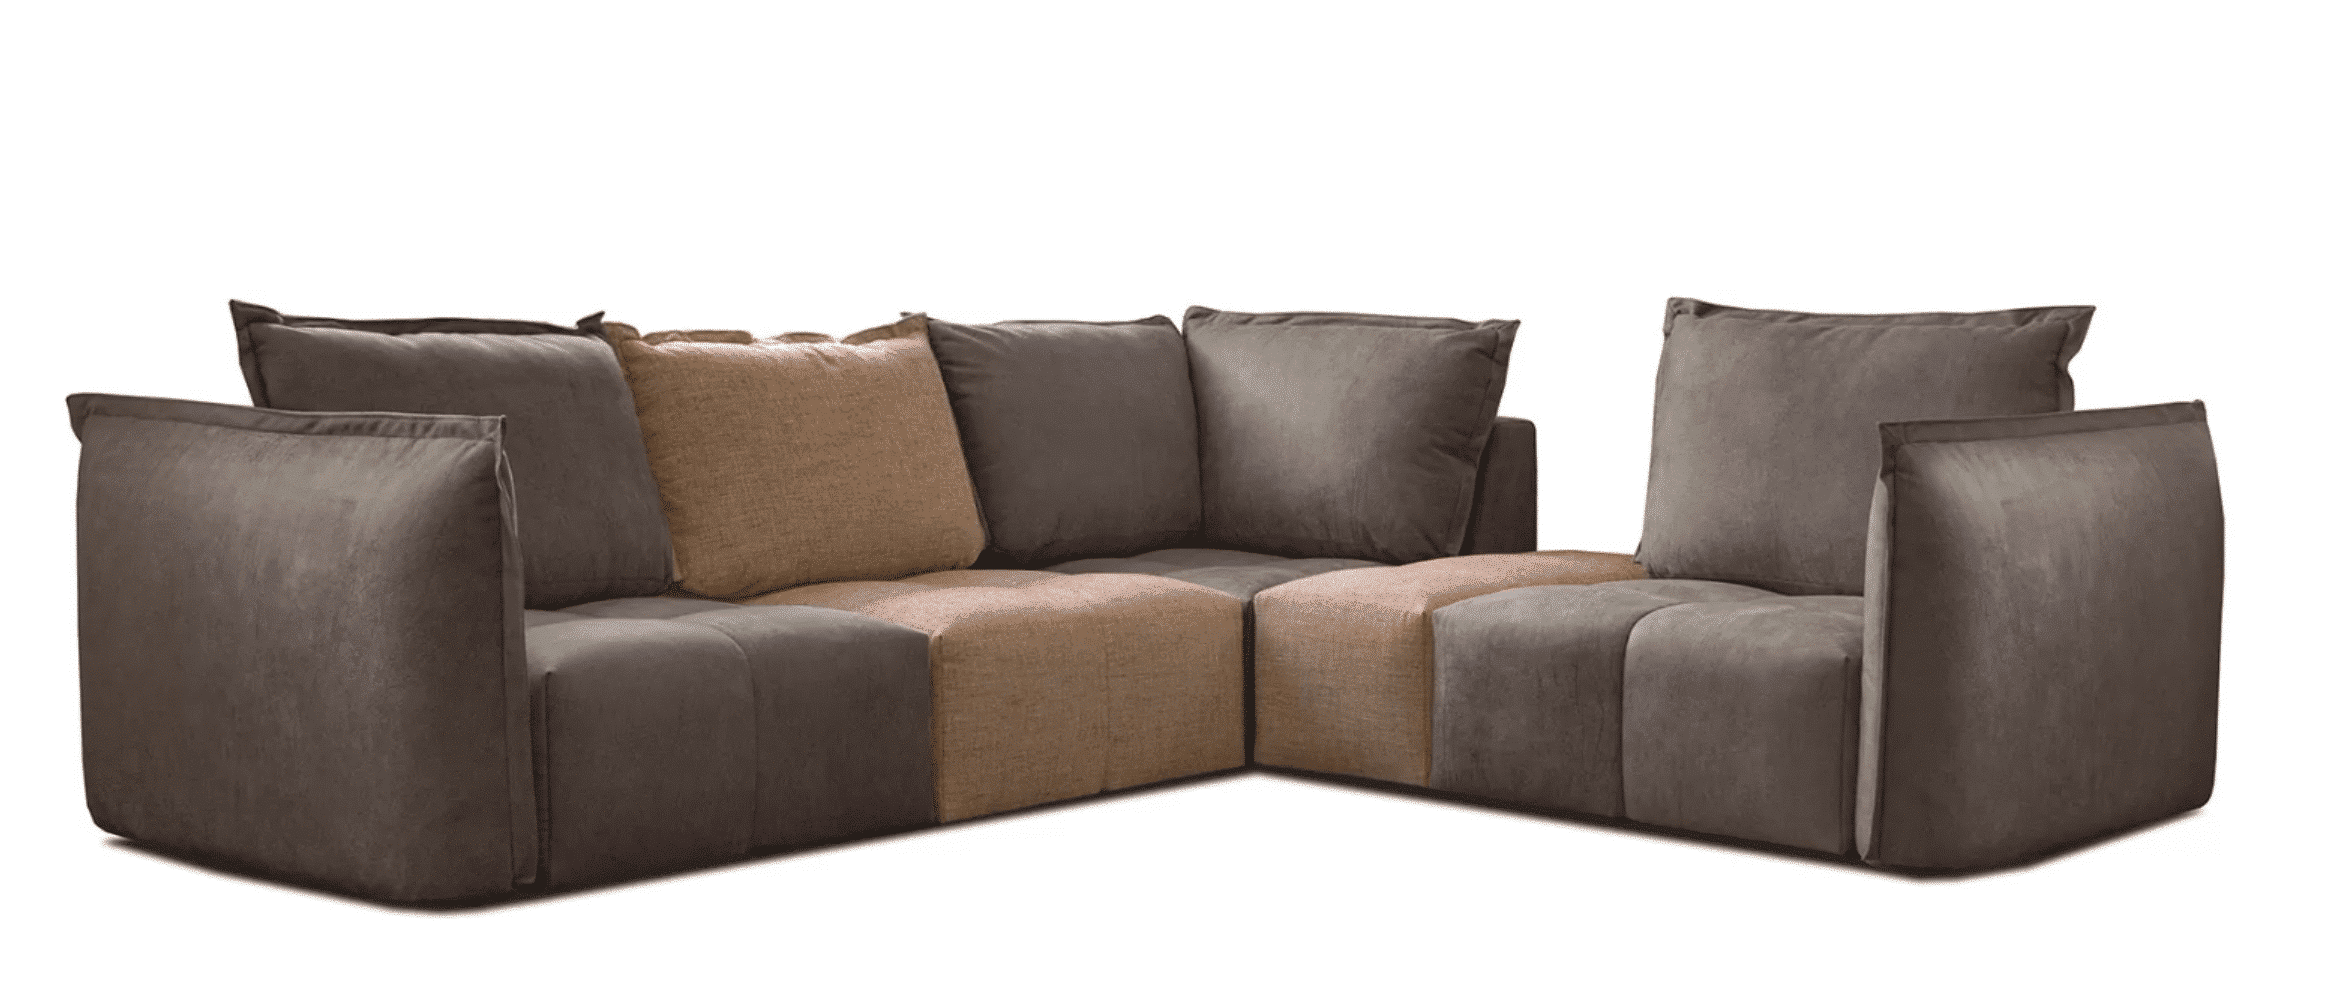 DEDA este o canapea modulara care se adapteaza usor nevoilor tale. Datorită formelor rotunjite și căptușelii foarte moale, modelul DEDA oferă un confort excepțional.